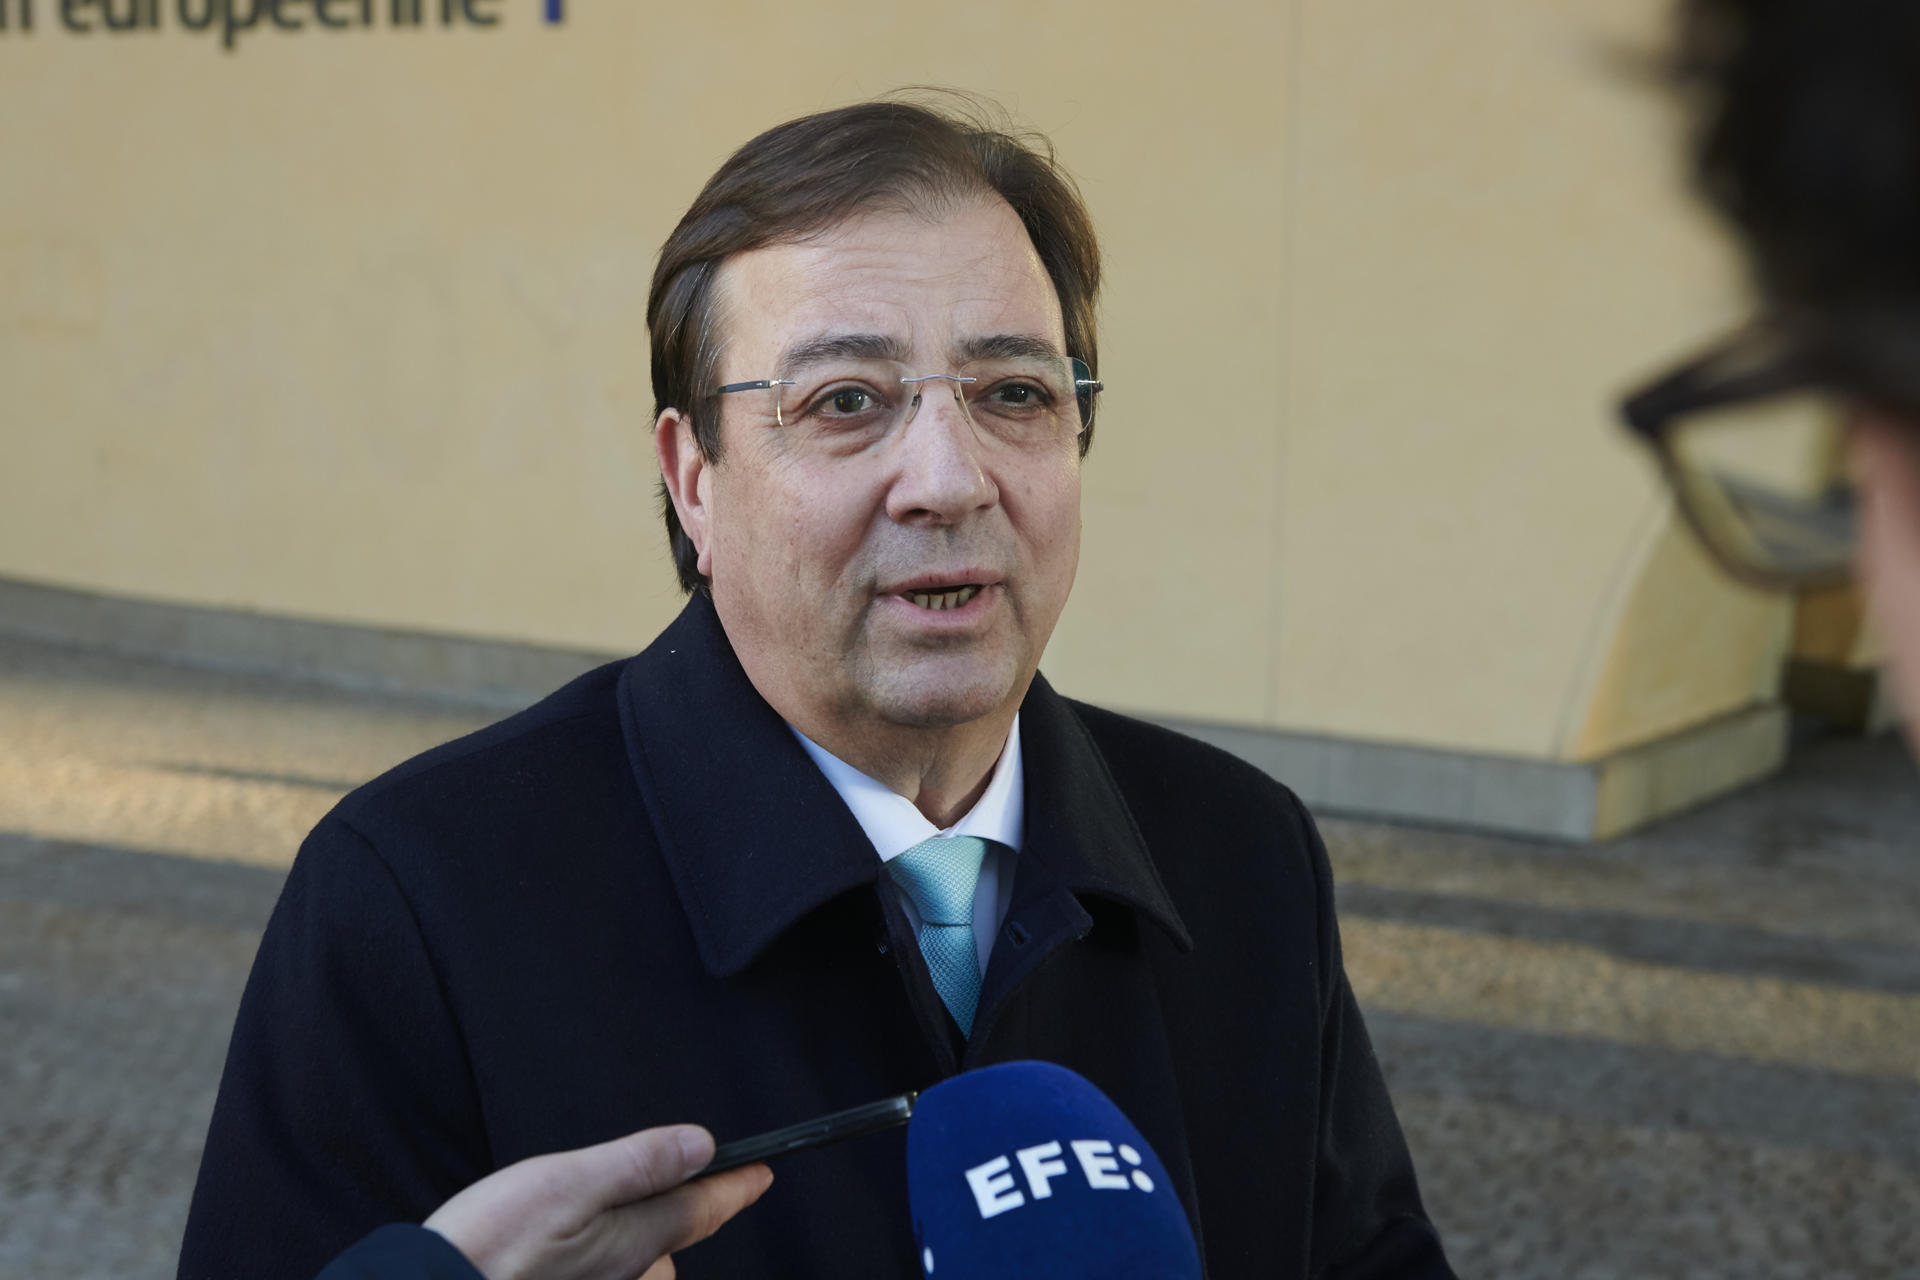 El presidente de la Junta de Extremadura, Guillermo Fernández Vara, atiende a los medios de comunicación ante la sede de la Comisión Europea este martes. EFE/ Horst Wagner